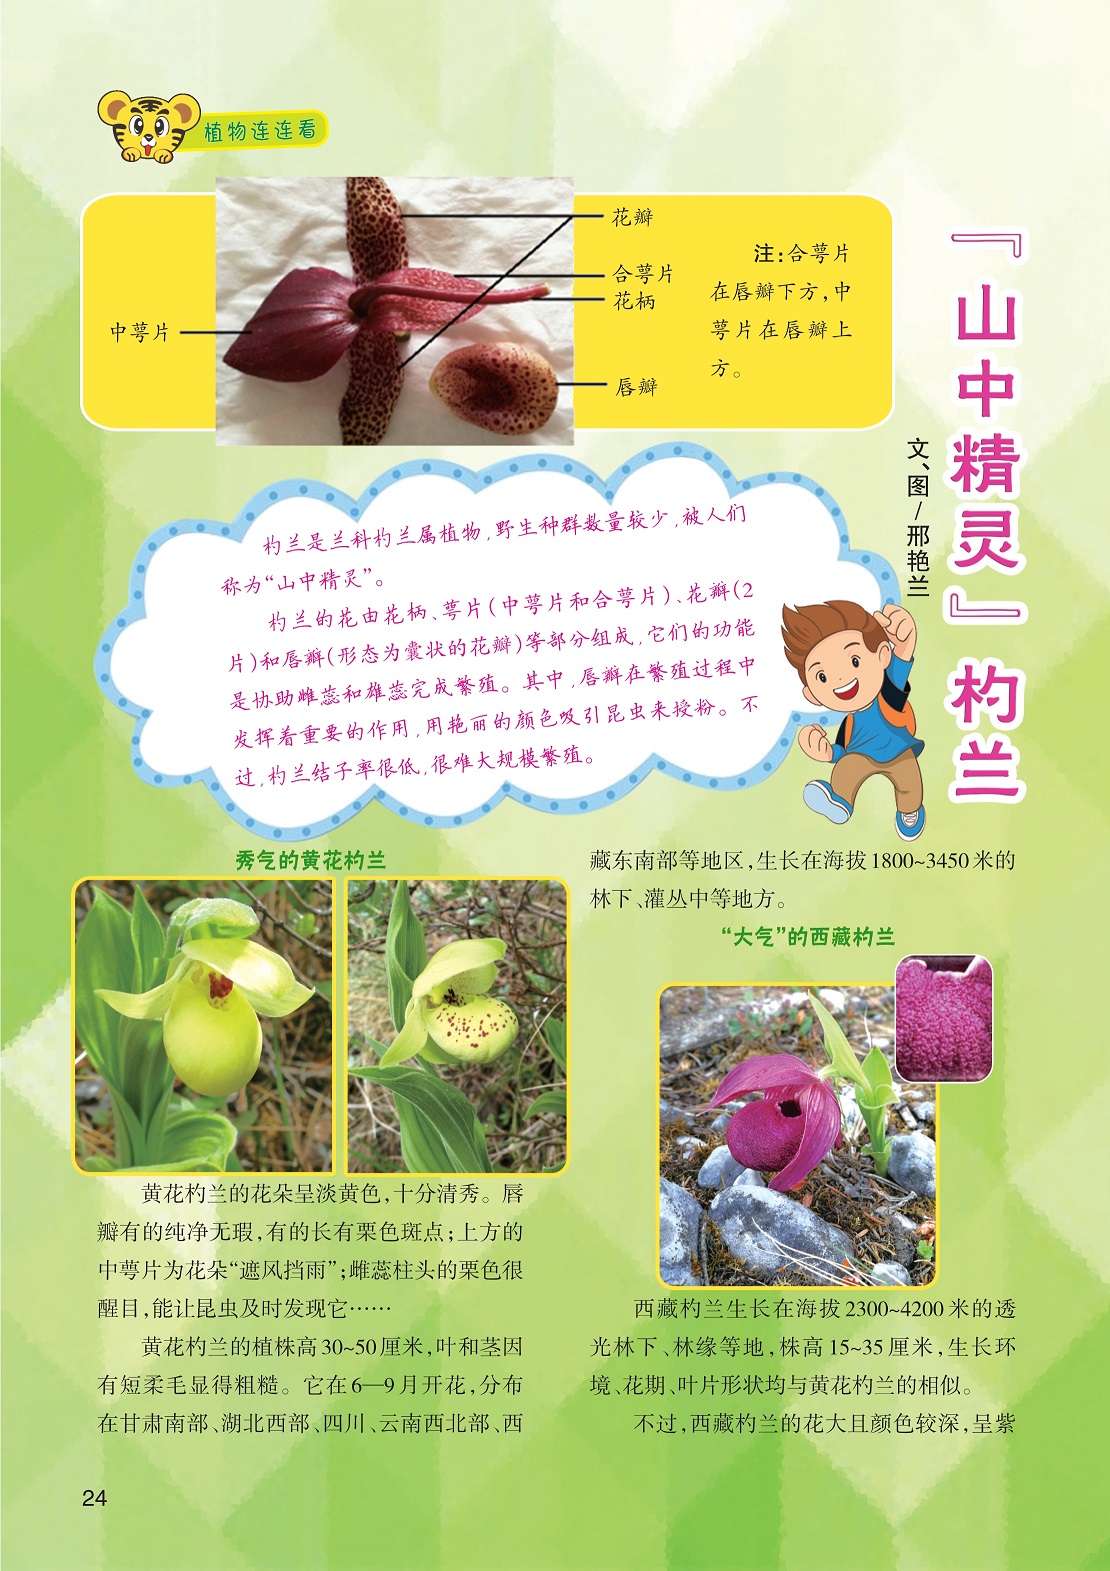 杓兰是兰科杓兰属植物,西藏杓兰的花大且颜色较深